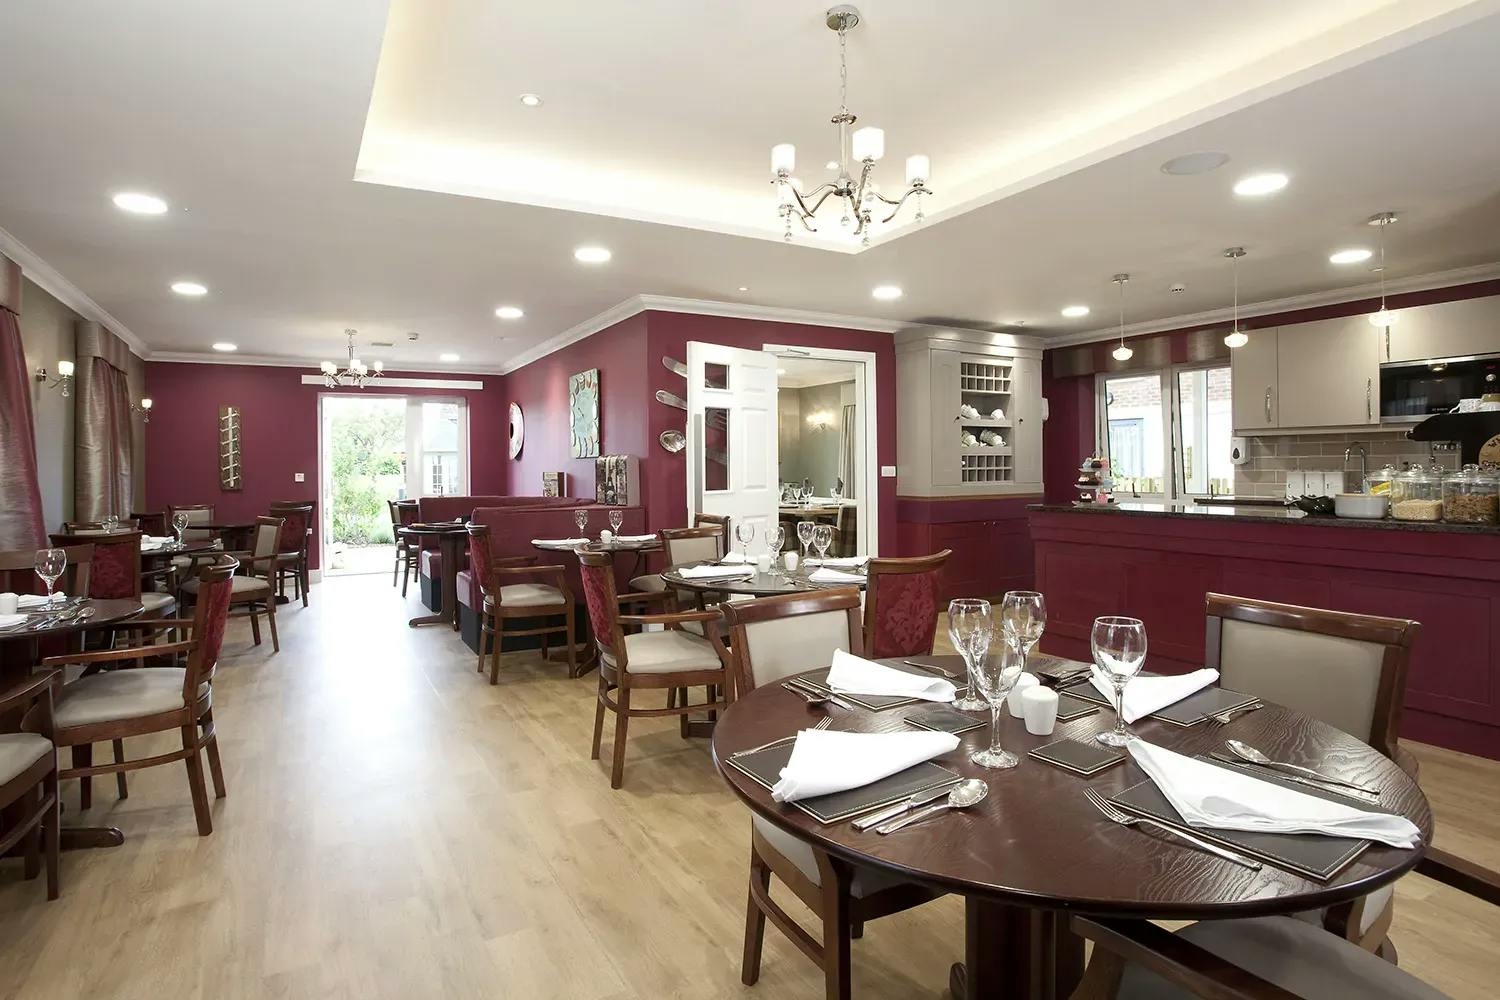 Dining room of Heathfield Court retirement development in Bexley